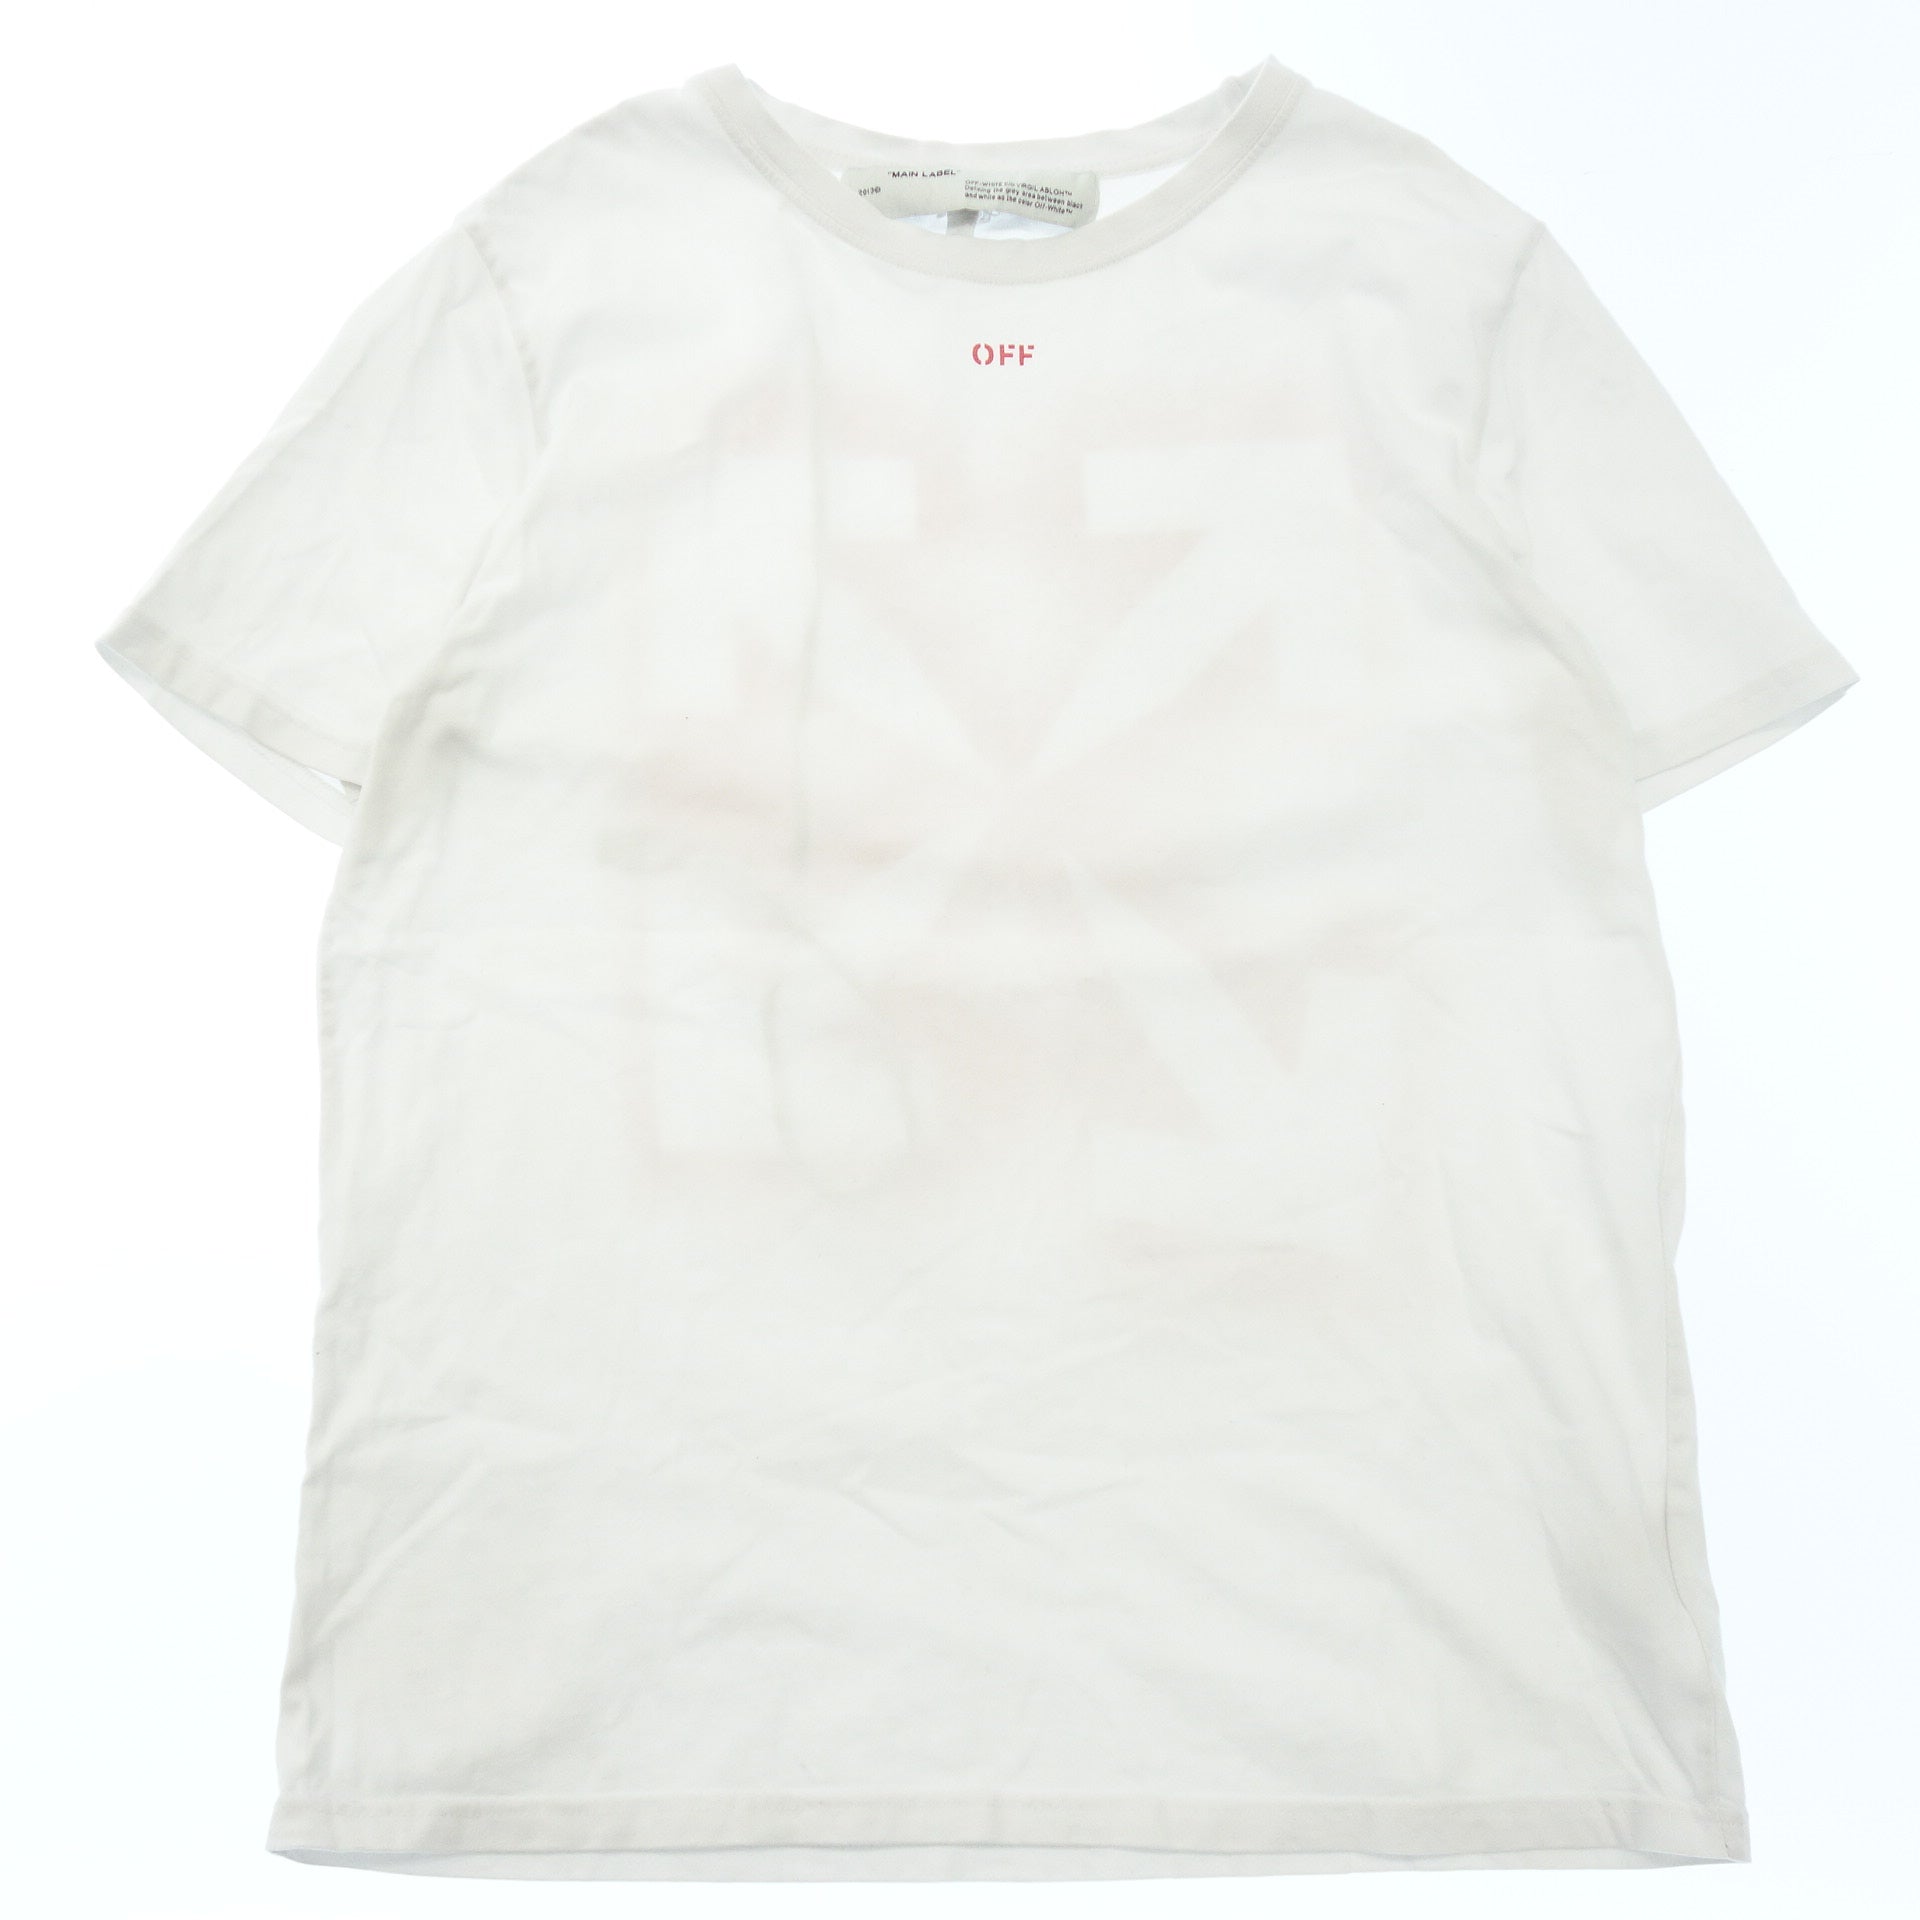 オフホワイト メインレーベル トップス Tシャツ メンズ ホワイト L OFF